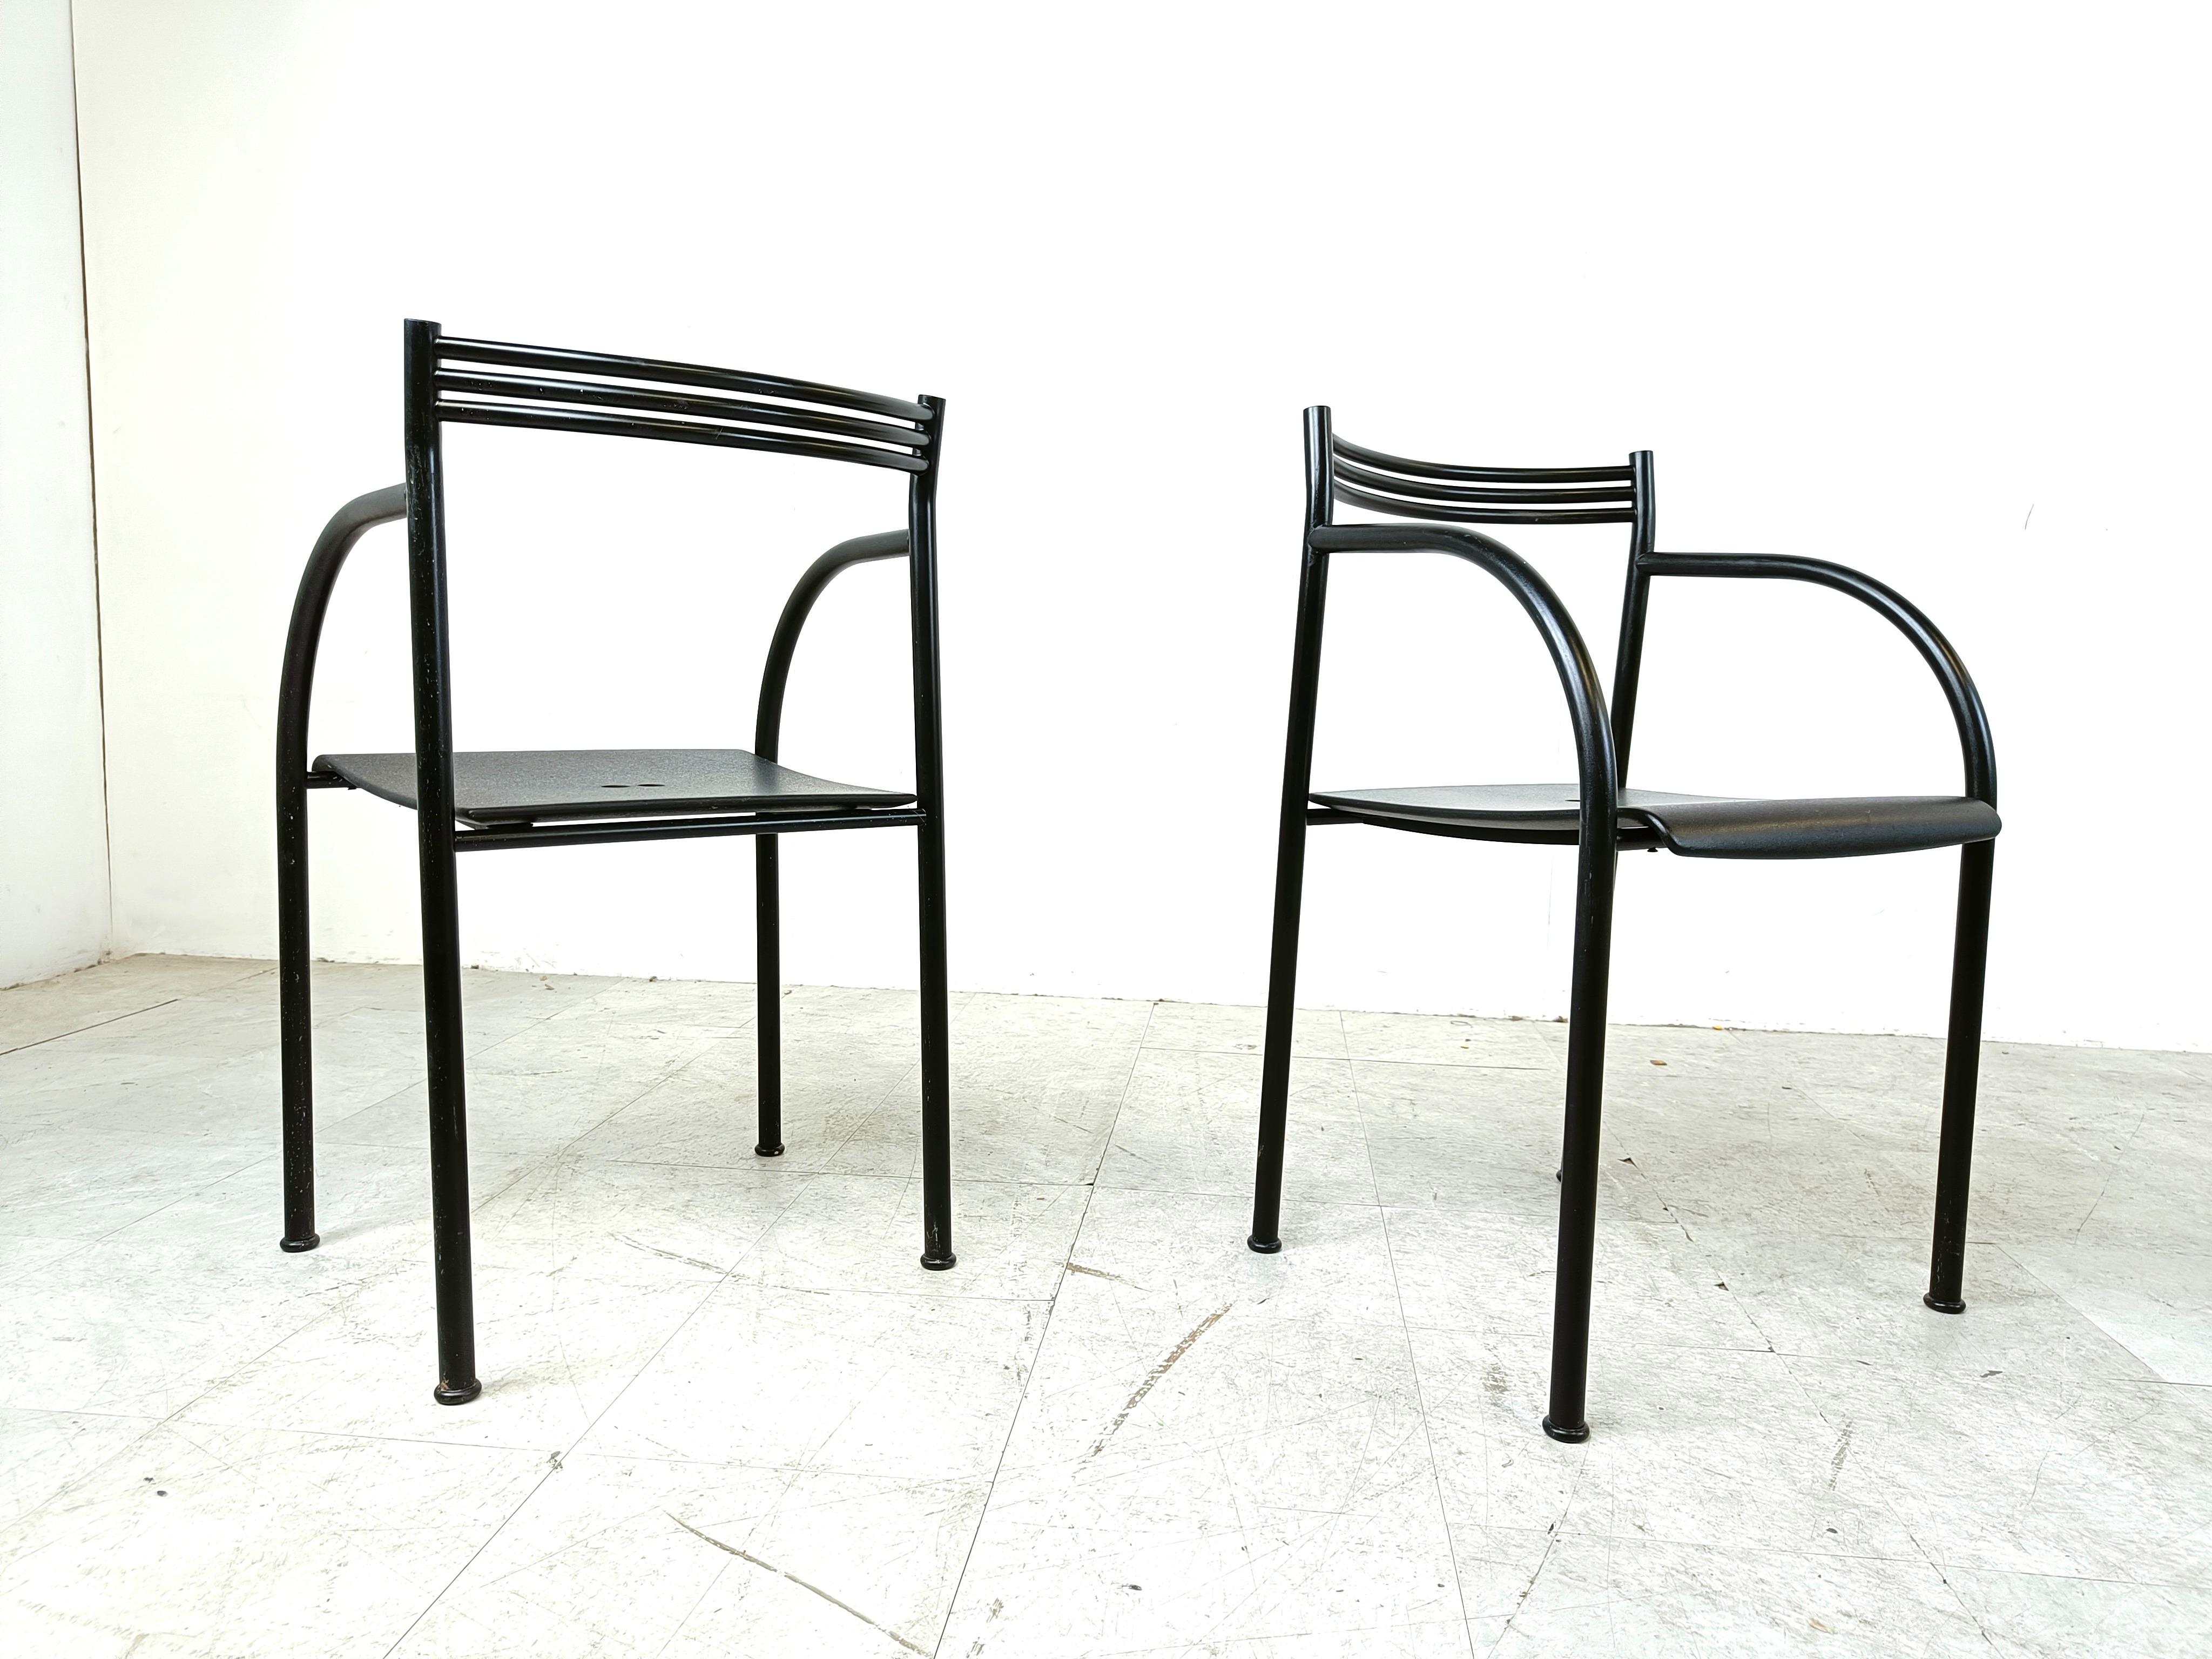 Satz von 4 sehr seltenen 'Spanish Francesca' Sesseln, entworfen von Philippe Starck für Baleri Italia.

Sie wurden 1982 entworfen.

Schönes ppost modernes Design.

Rahmen aus schwarzem Metall mit einer dünnen Metallummantelung als Sitzfläche.

Kann